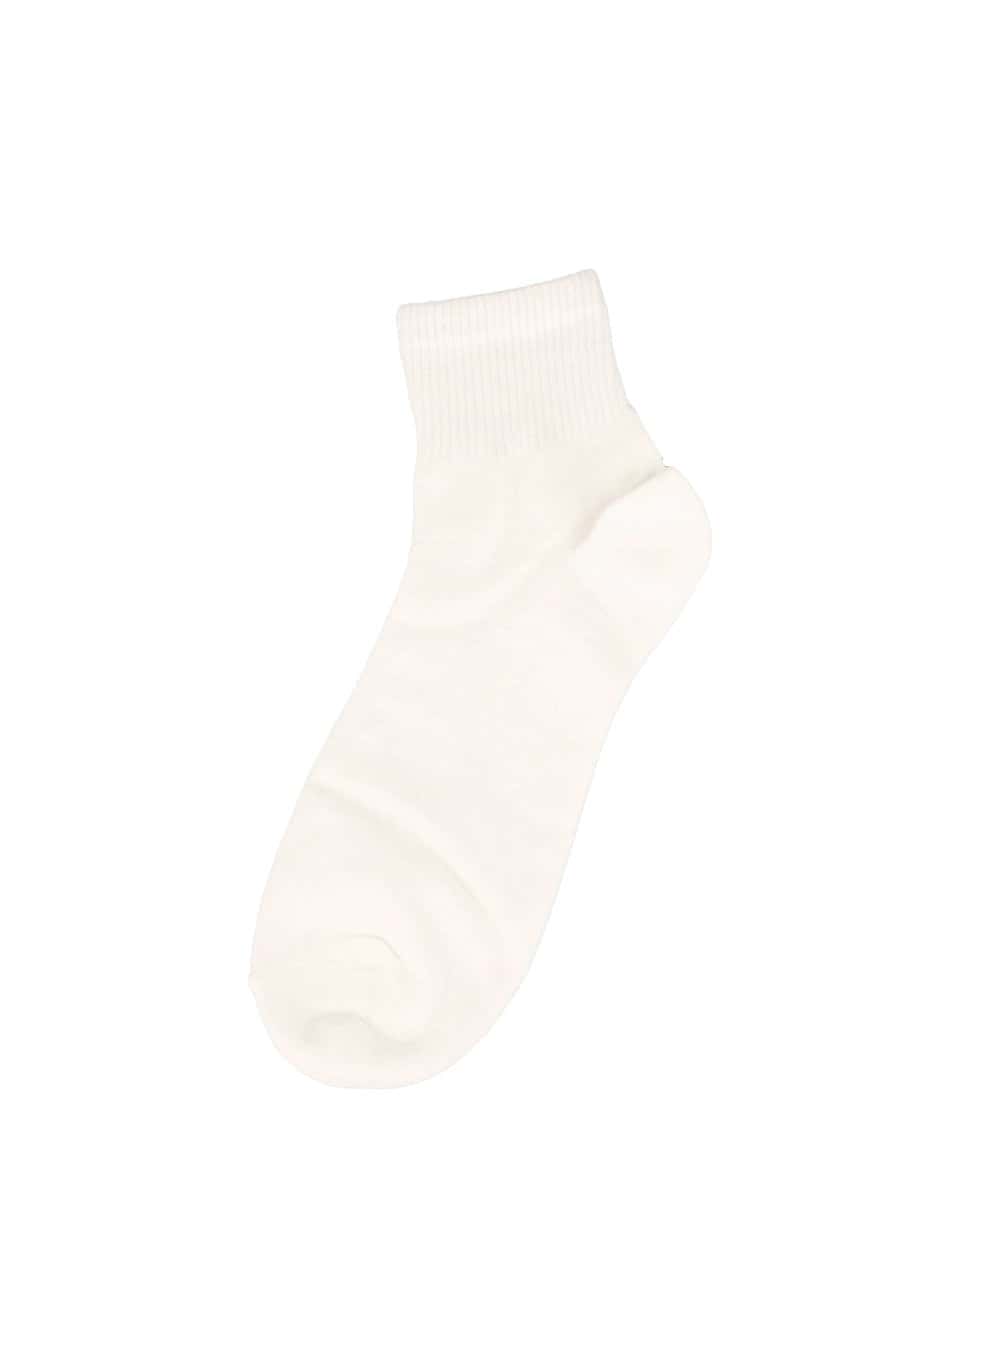 mens-basic-ankle-socks-iy410 / White